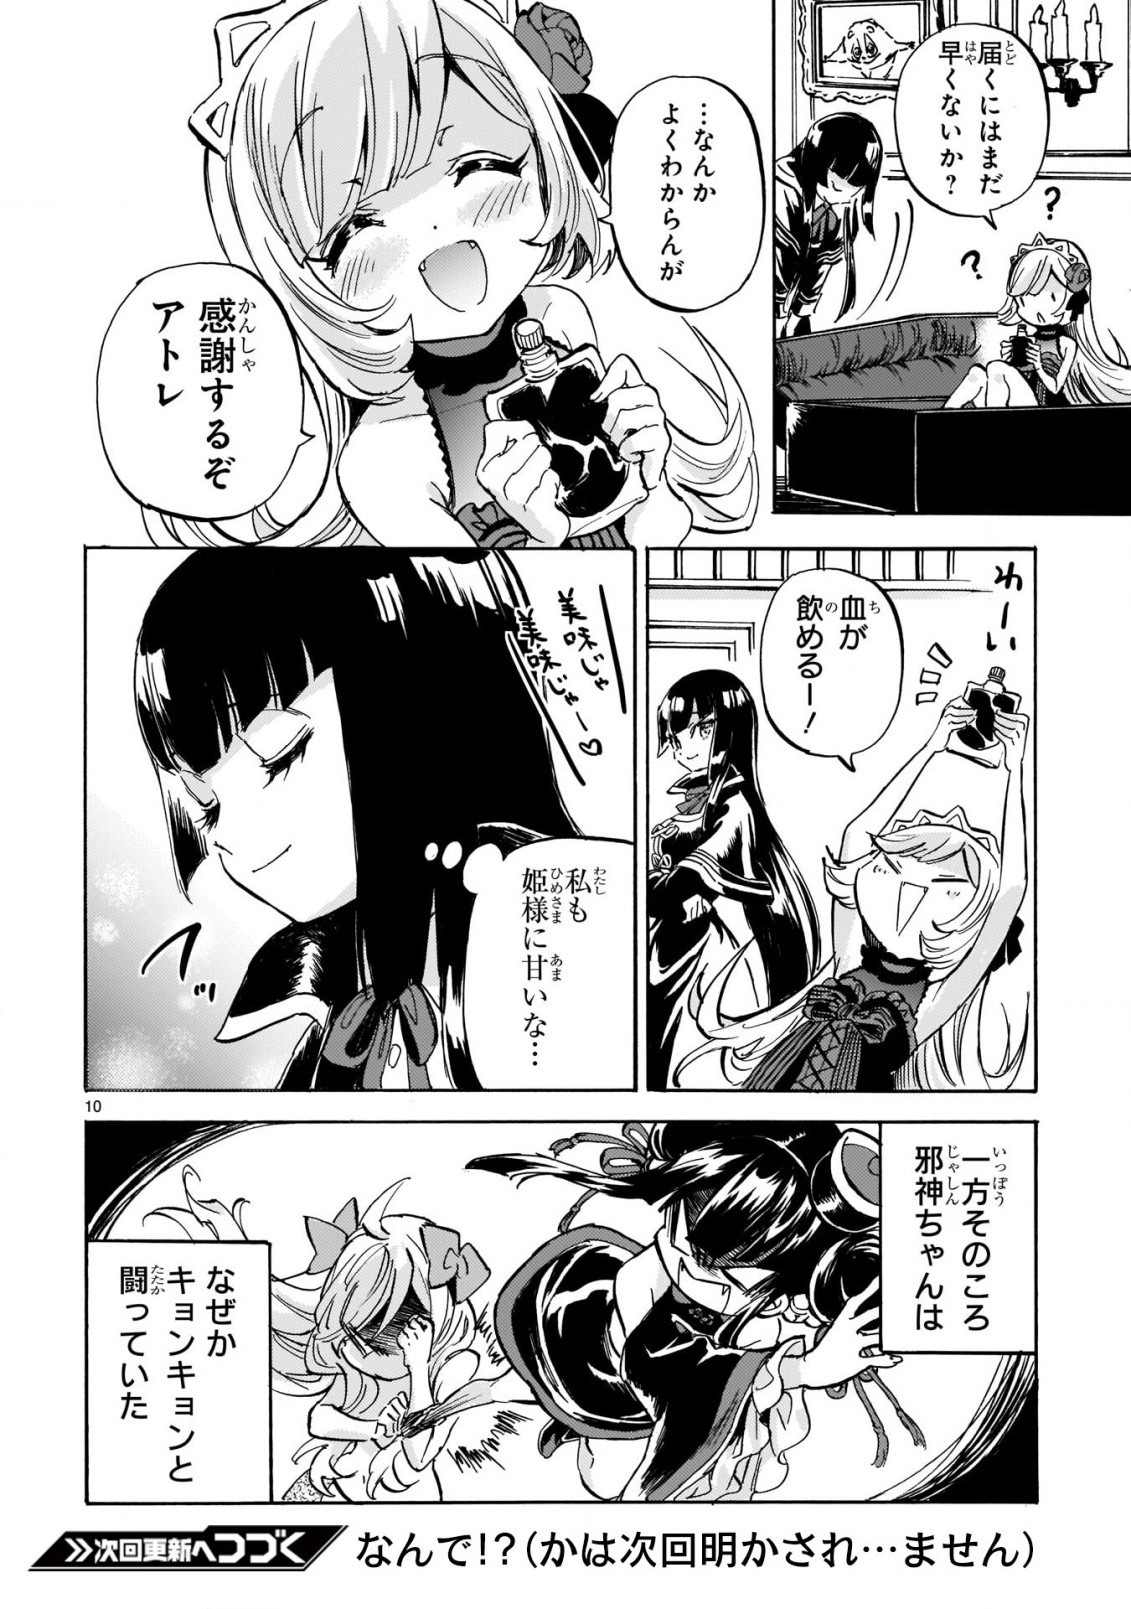 Jashin-chan Dropkick - Chapter 196 - Page 10